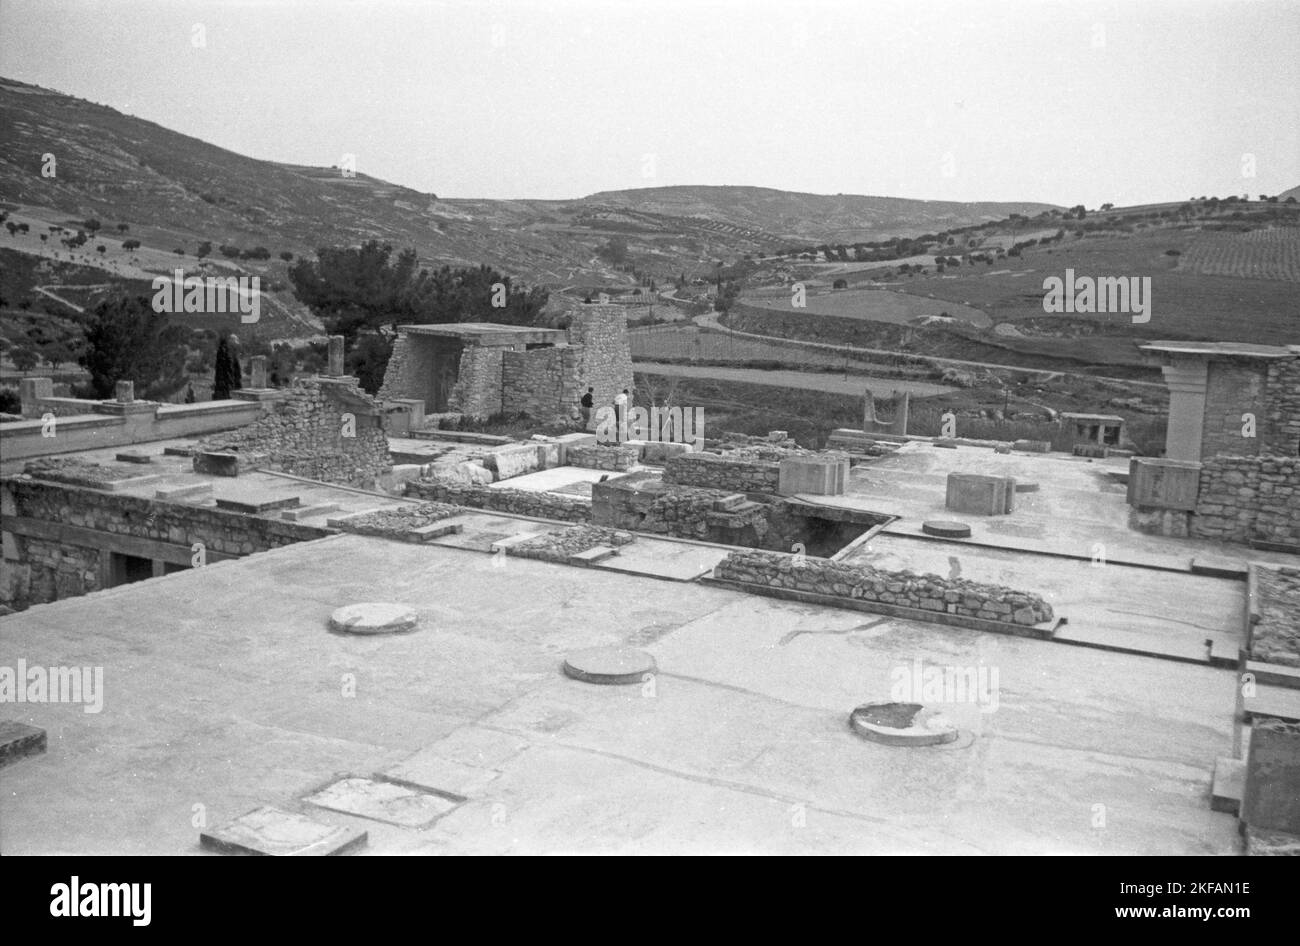 Die Palastanlage von Knossos auf der Insel Kreta, Griechenland, 1950er Jahre. Palais de Knossos sur l'île de Crète, Grèce, 1950s. Banque D'Images